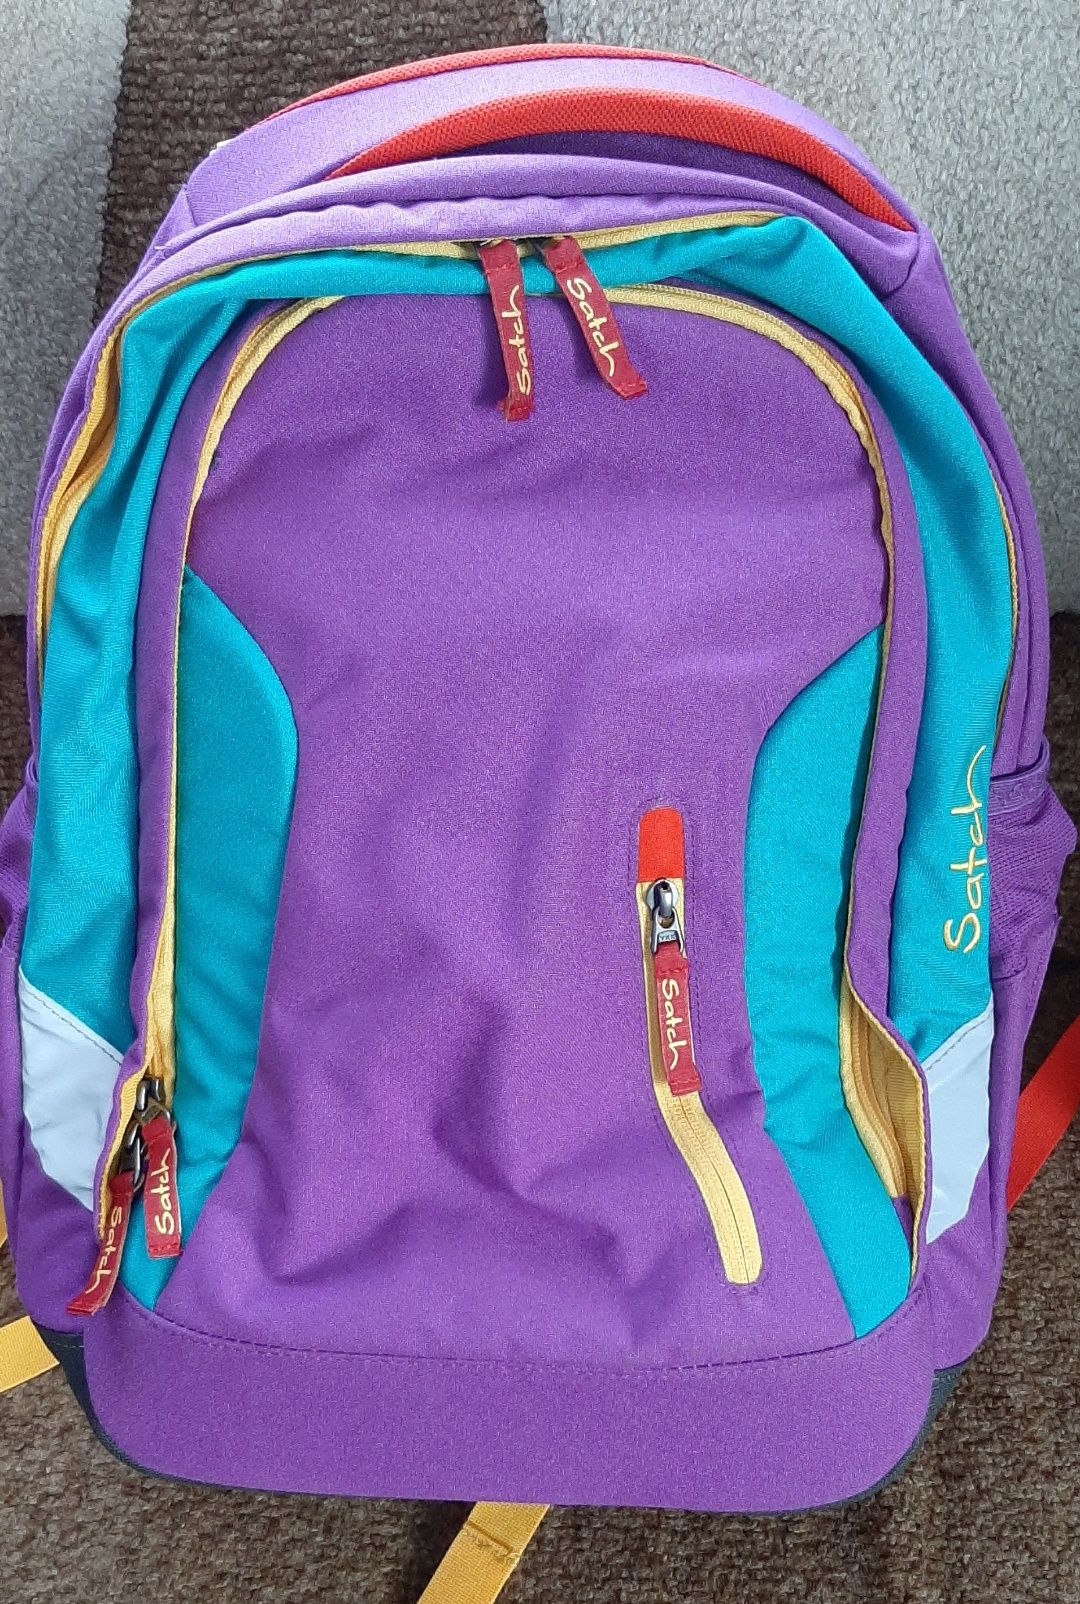 Шкільний рюкзак, ранець школьный рюкзак